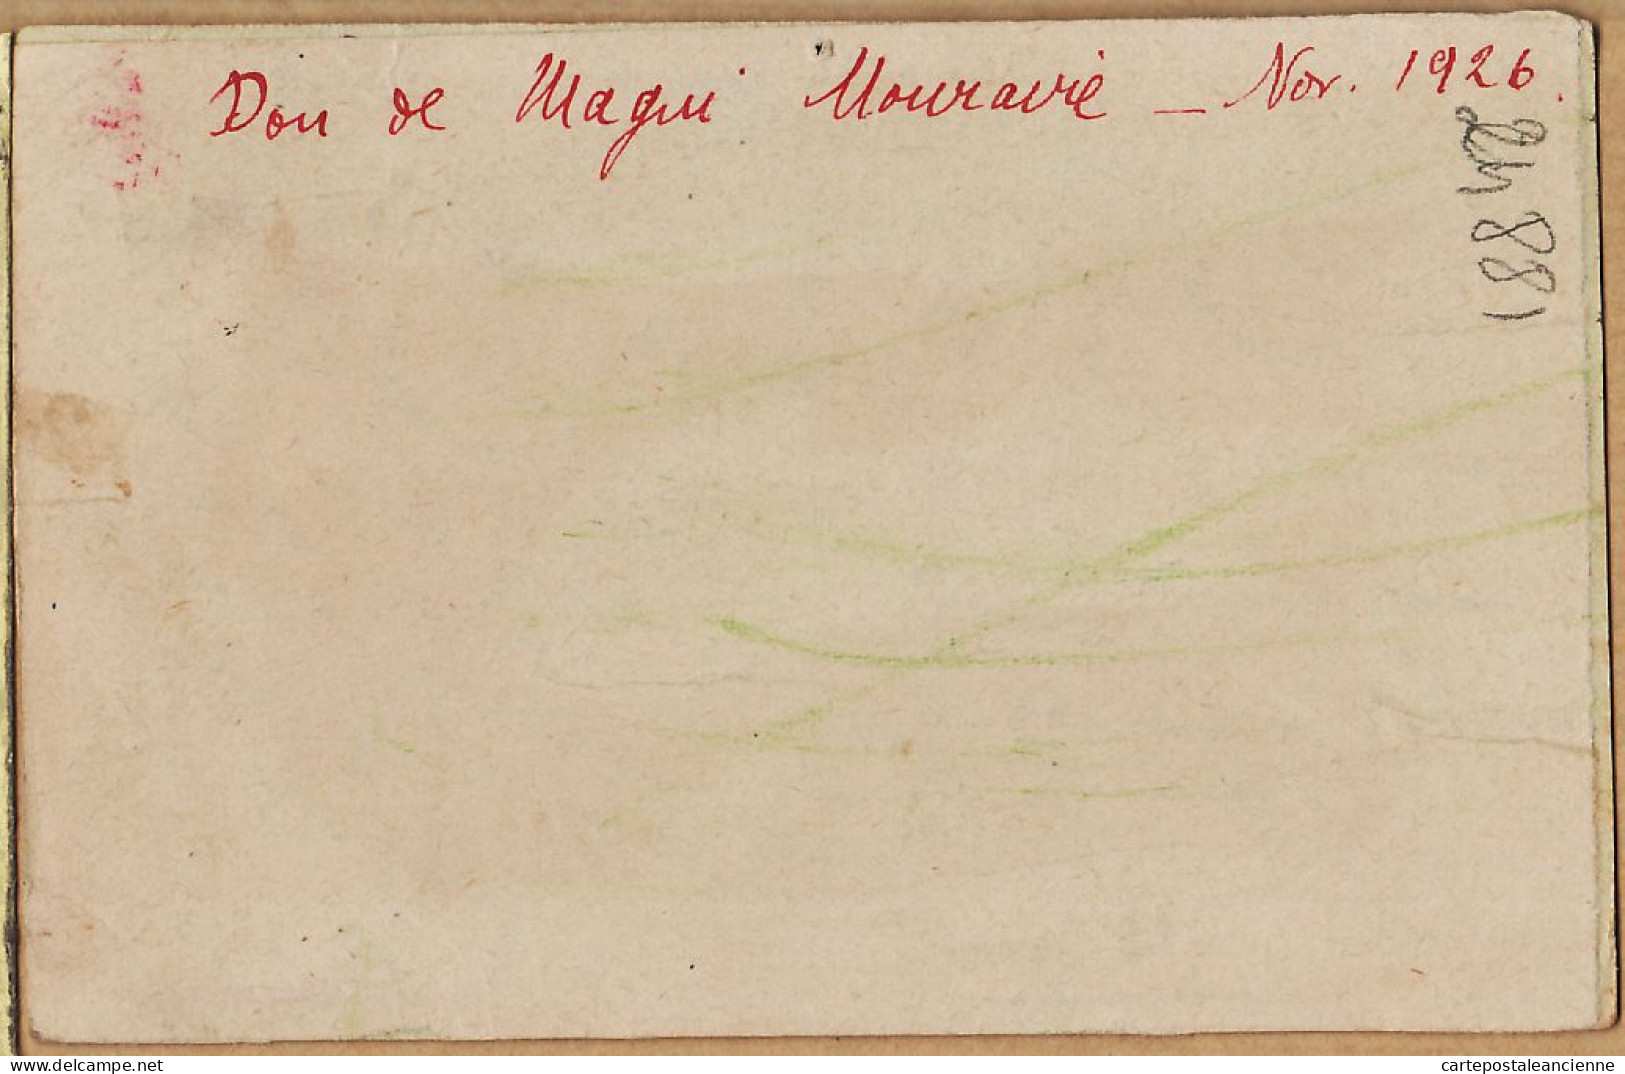 26412 / ⭐ ALGER Pièce D'eau Parc GALLAND "Don De Magui MOURAVIE Novembre 1926 Algérie - Algiers